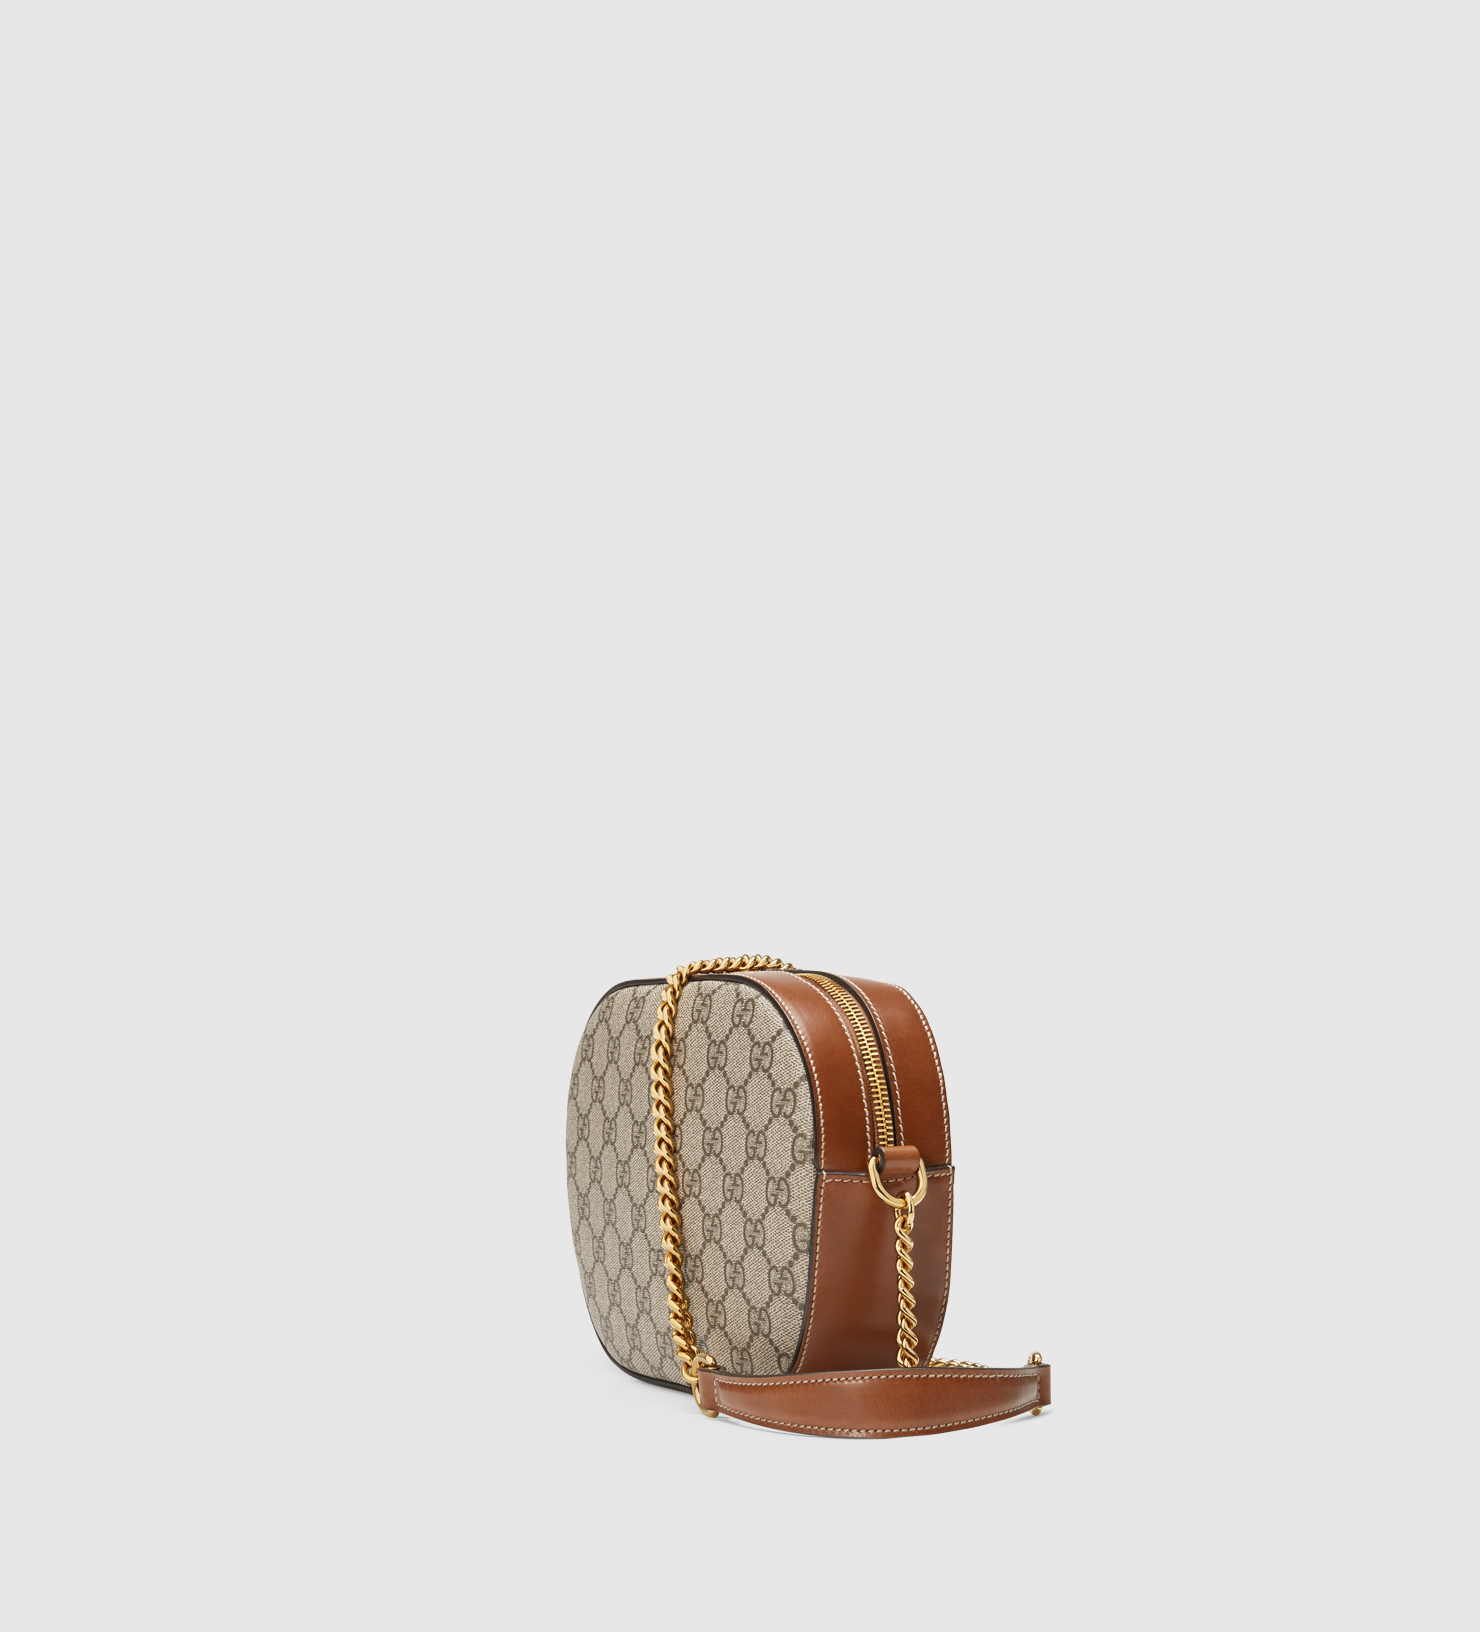 Lyst - Gucci Gg Supreme Mini Chain Bag in Brown